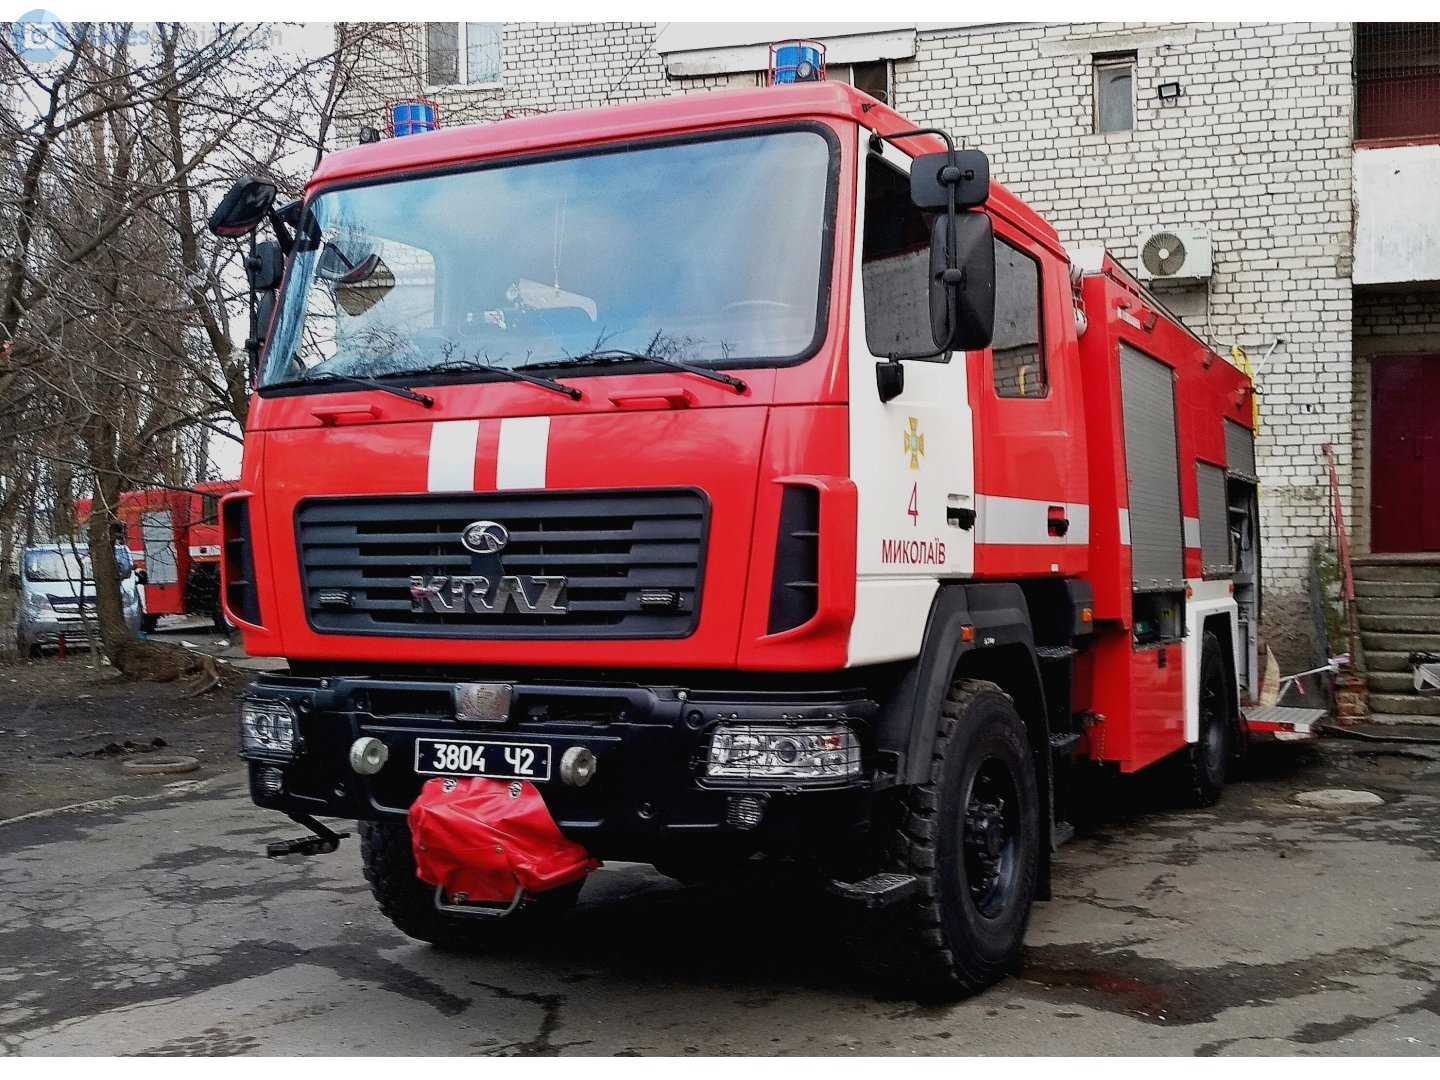 Автокраз для еристовского гока создал новый пожарный автомобиль краз н23.2 (ац-13-70)